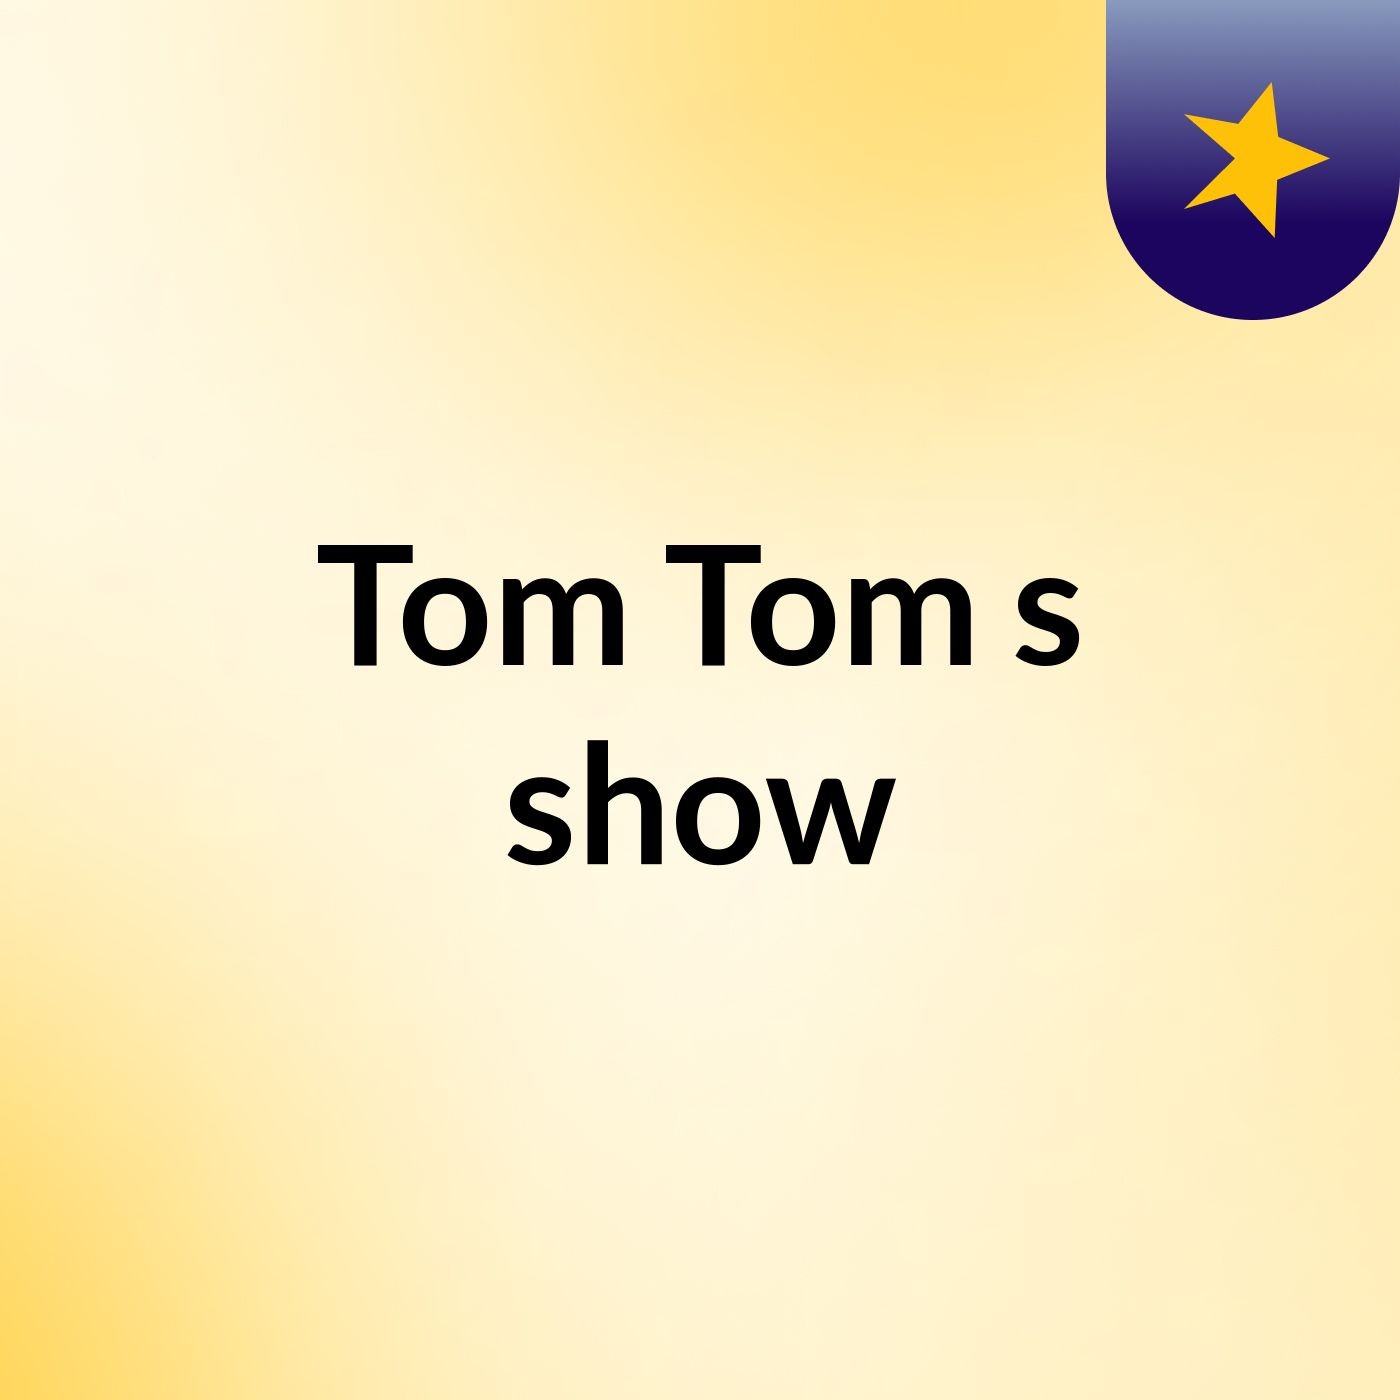 Tom Tom's show